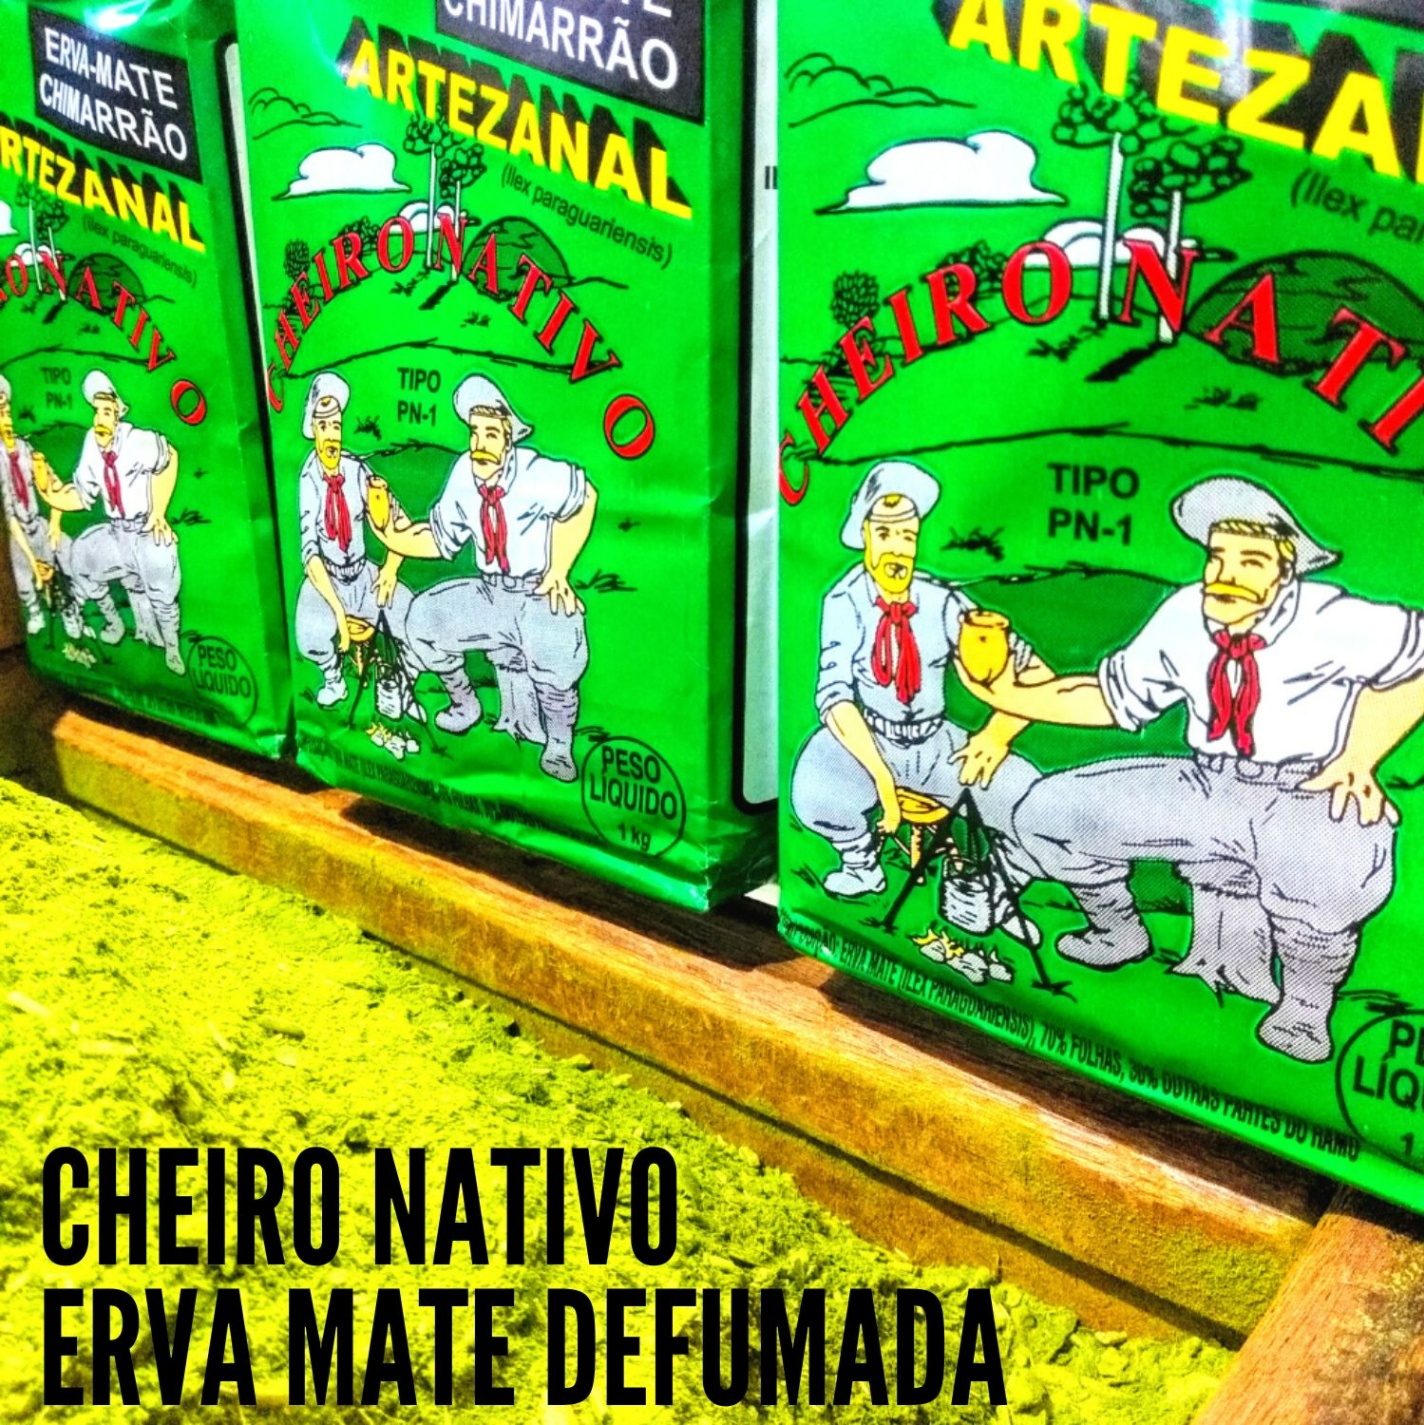 Baldo leva o sabor intenso da erva-mate a Porto Alegre com nova